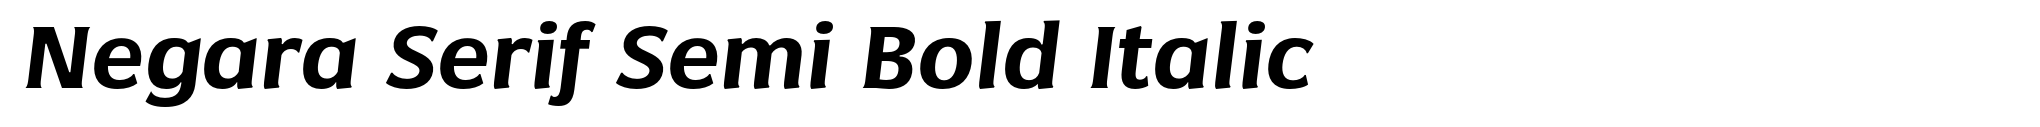 Negara Serif Semi Bold Italic image